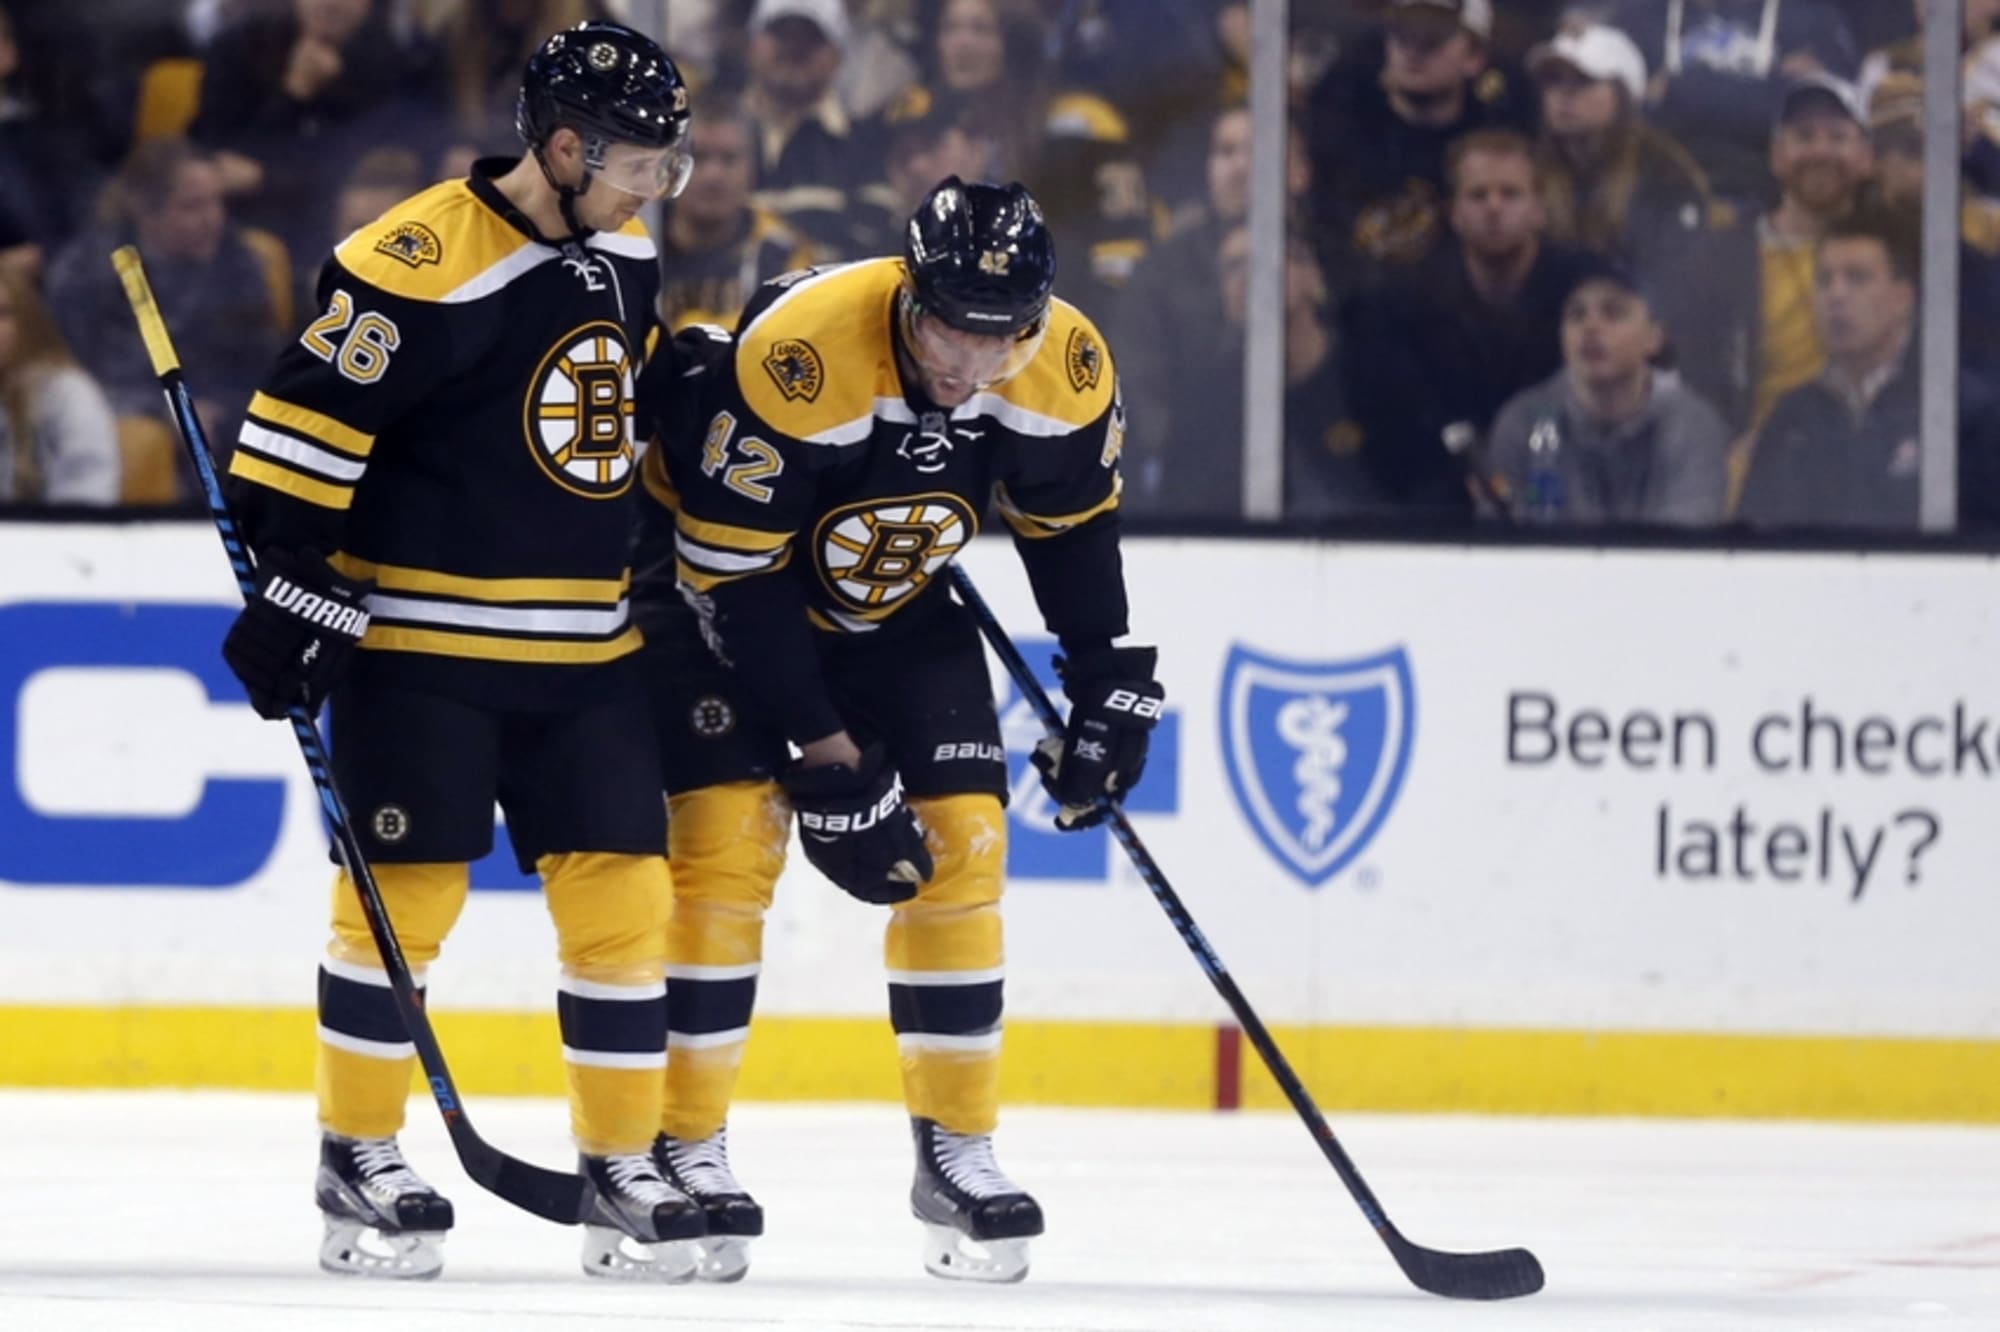 Boston Bruins Home Record Still Troublesome